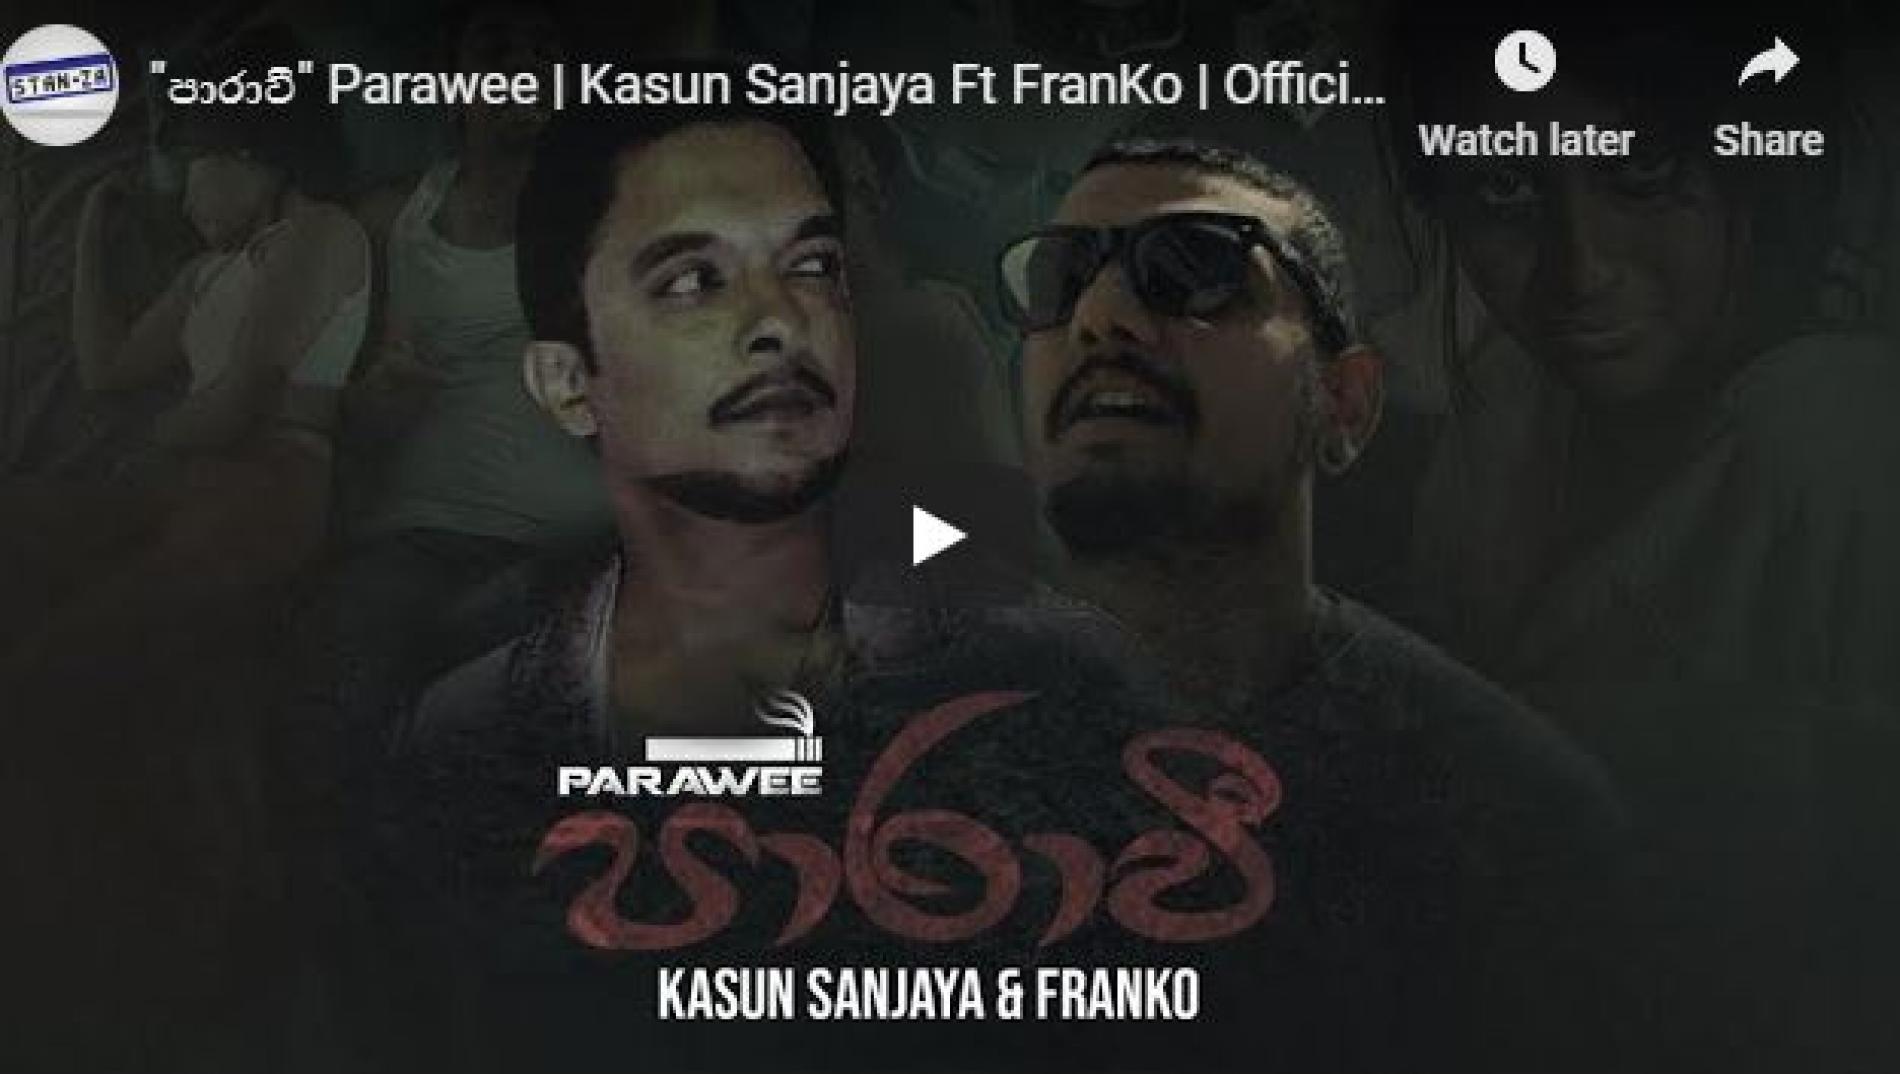 “පාරාවී” Parawee | Kasun Sanjaya Ft FranKo | Official Music Video